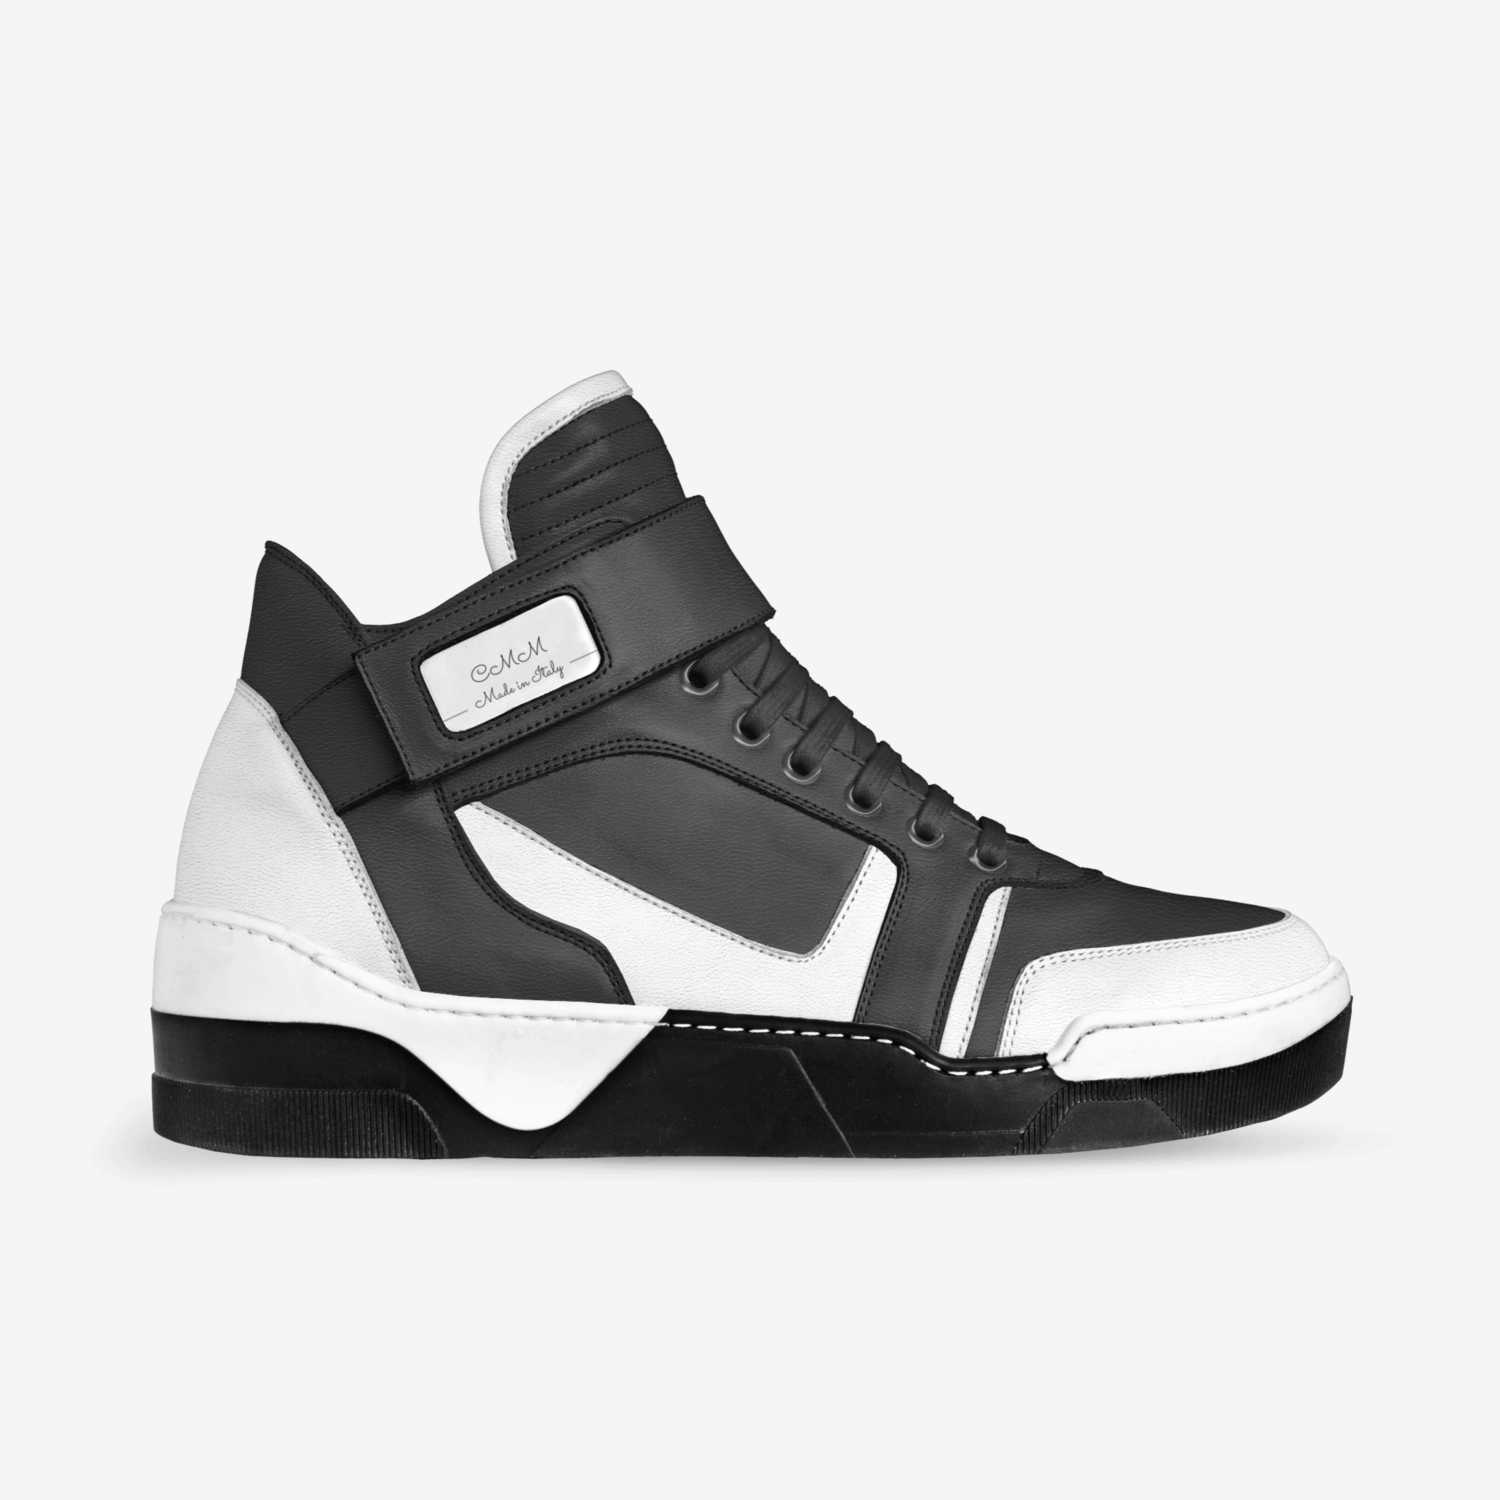 CMM | A Custom Shoe concept by Juan